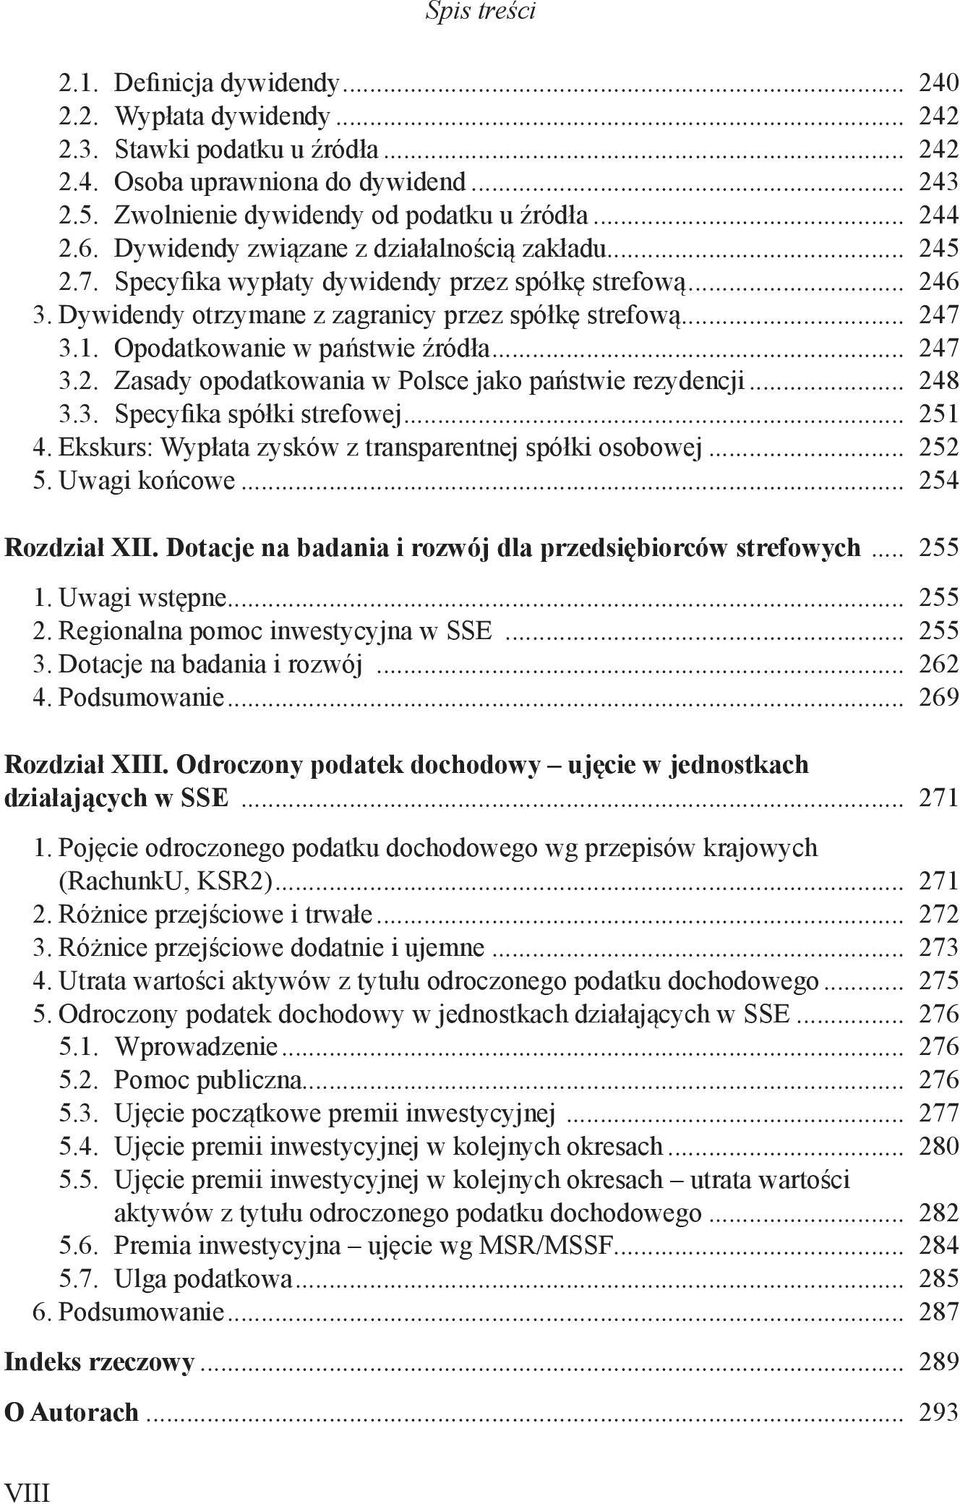 Opodatkowanie w państwie źródła... 247 3.2. Zasady opodatkowania w Polsce jako państwie rezydencji... 248 3.3. Specyfika spółki strefowej... 251 4.